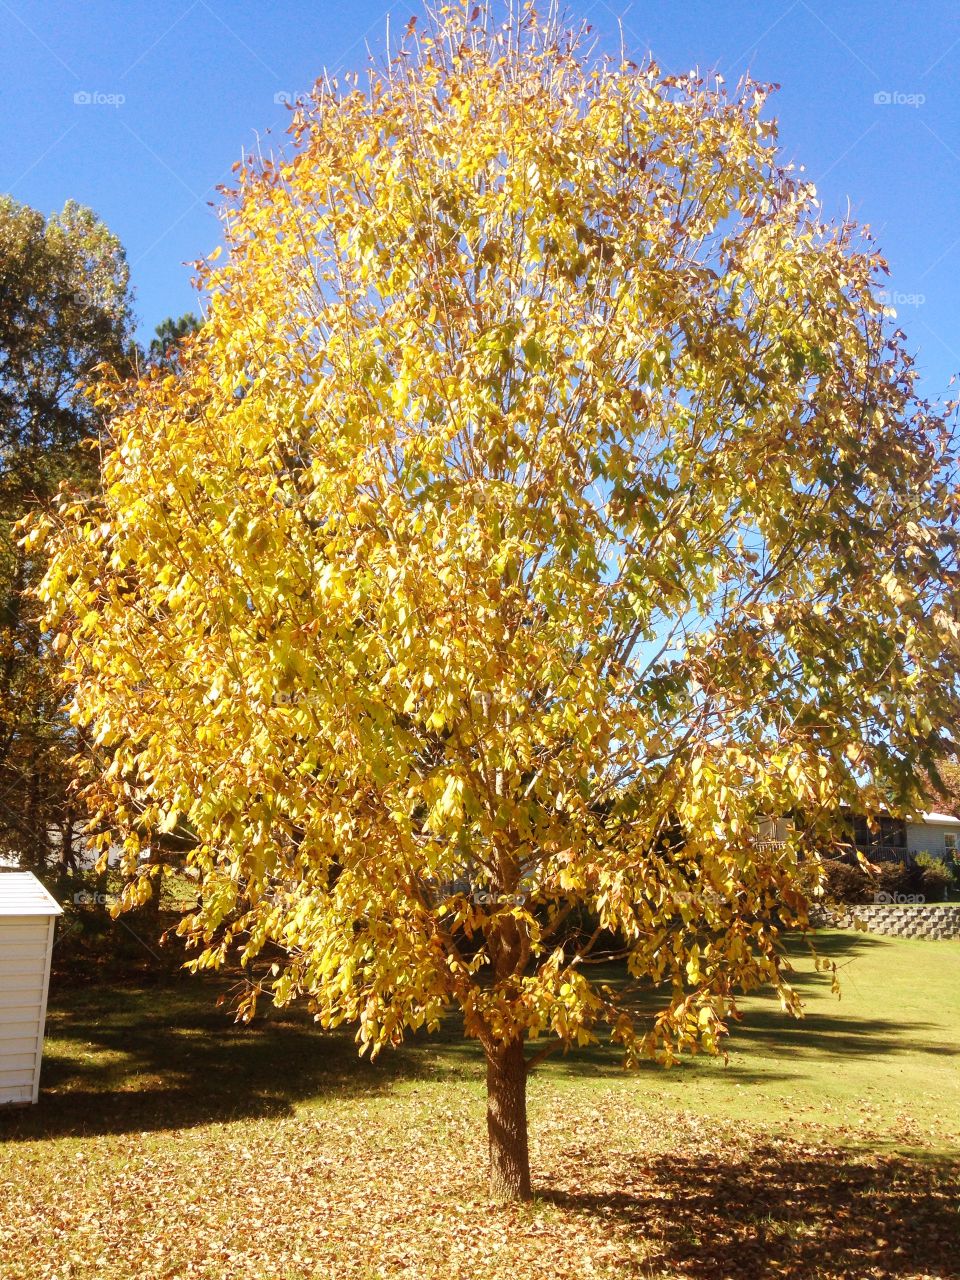 Autumn yellow tree